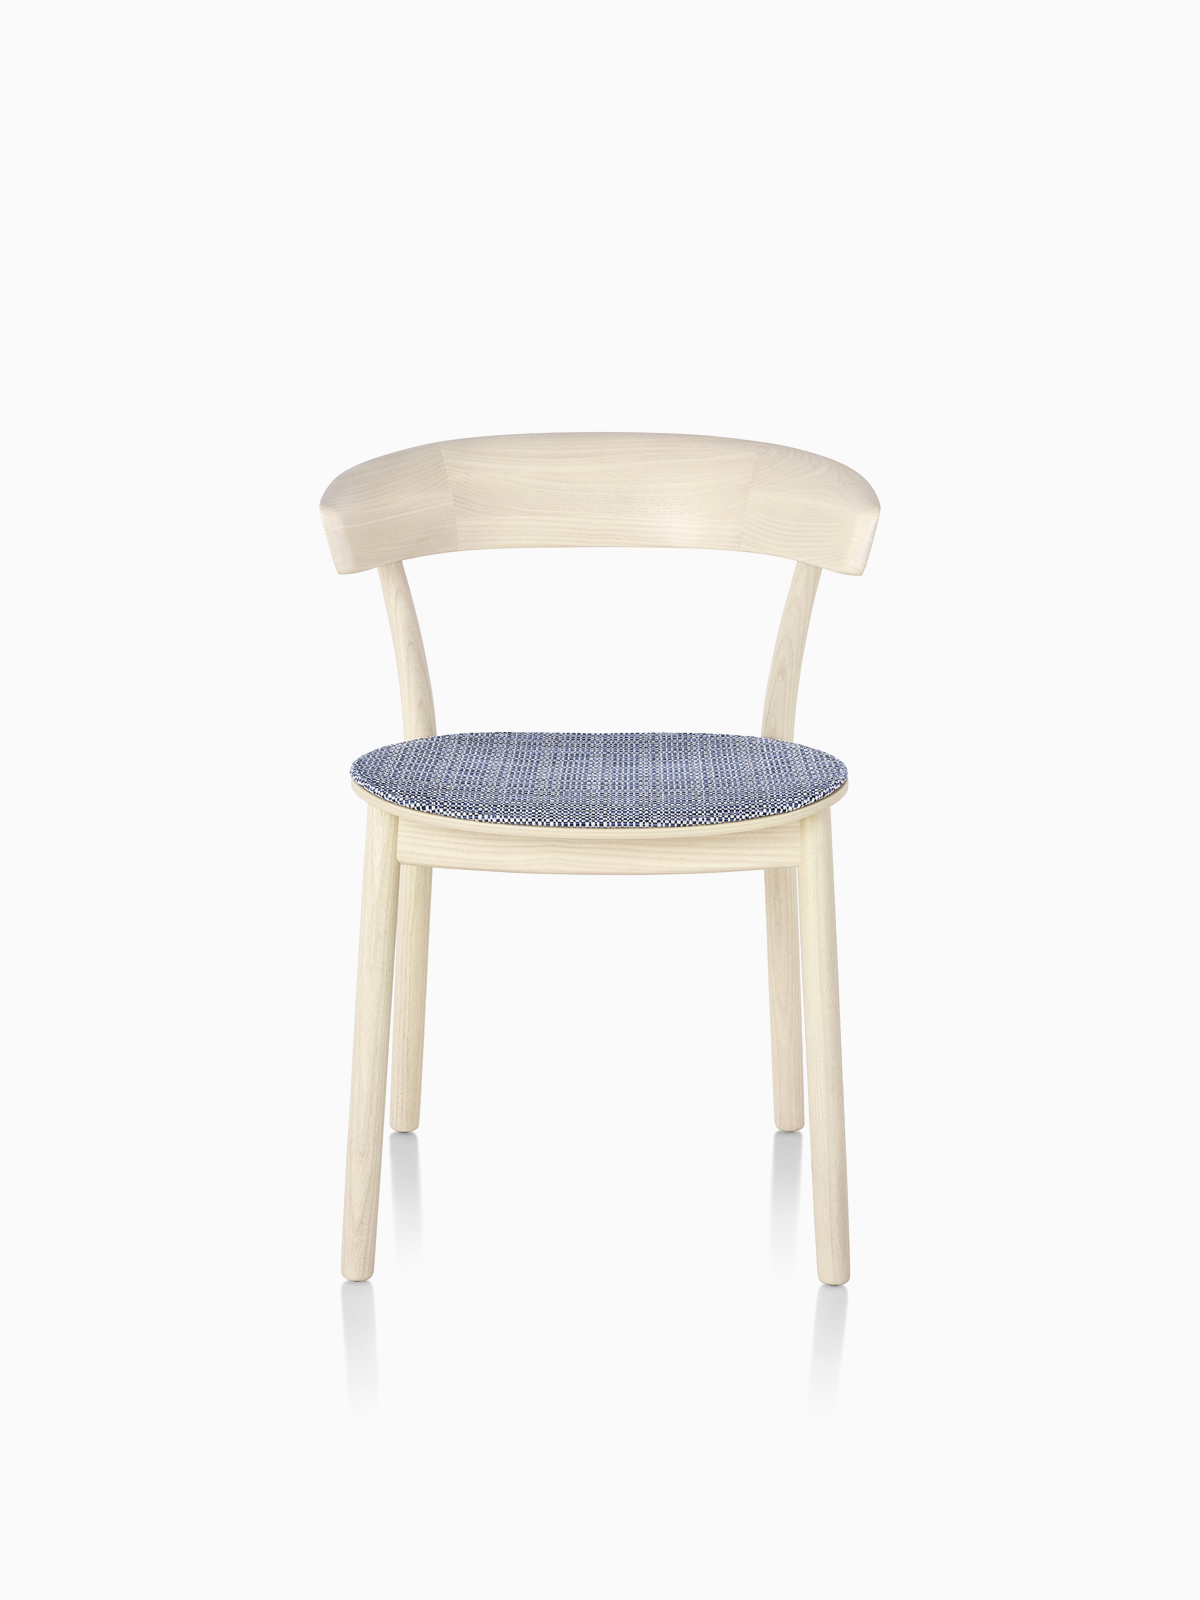 Leeway-stoel